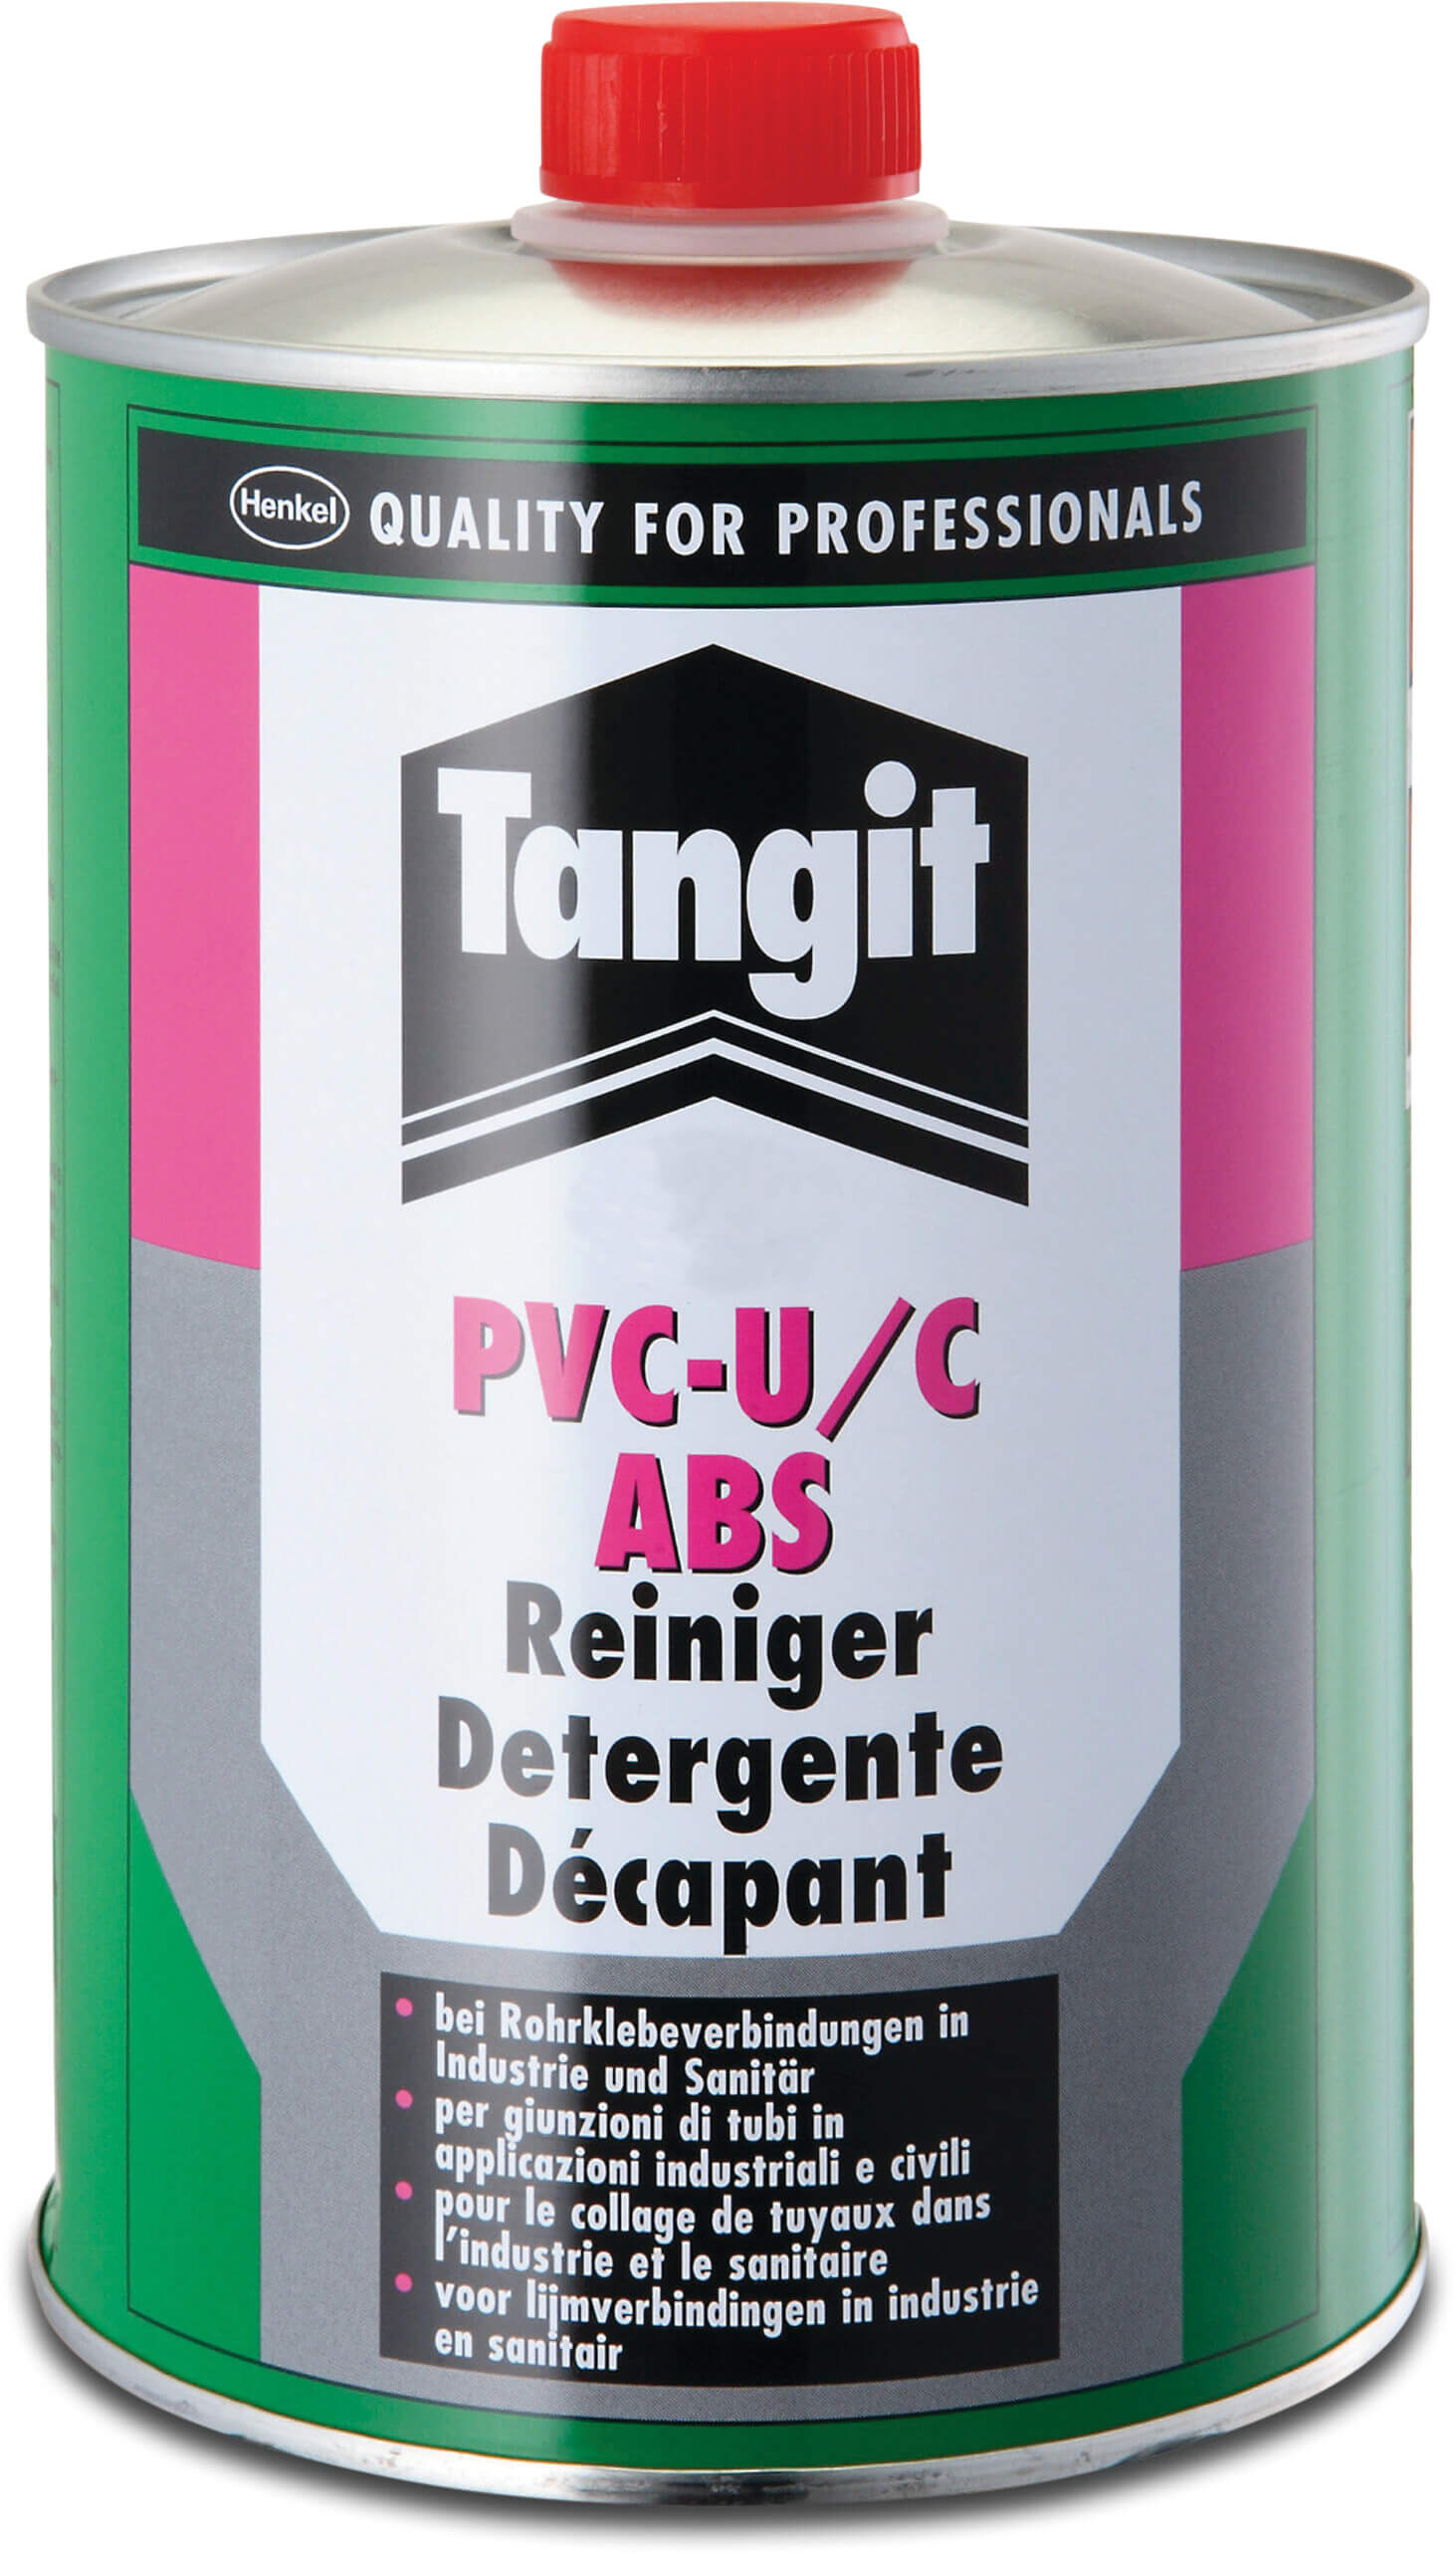 Tangit Reiniger 0,125ltr type PVC-U/C ABS Label EN/DE/NL/FR